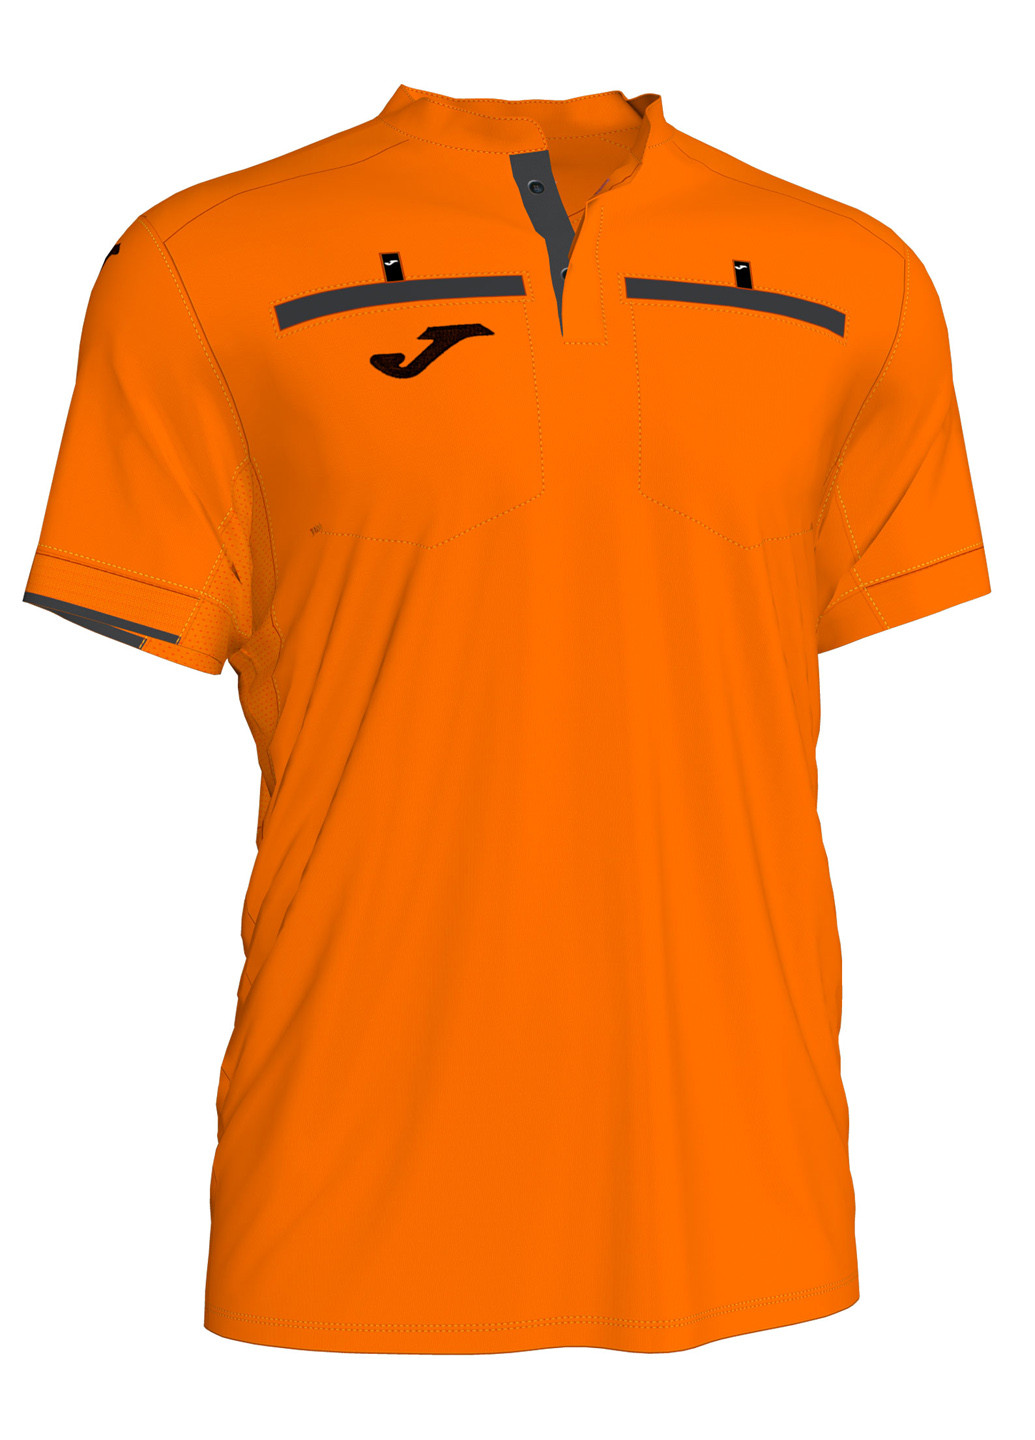 Оранжевая футболка-судейская футболка для мужчин Joma с логотипом